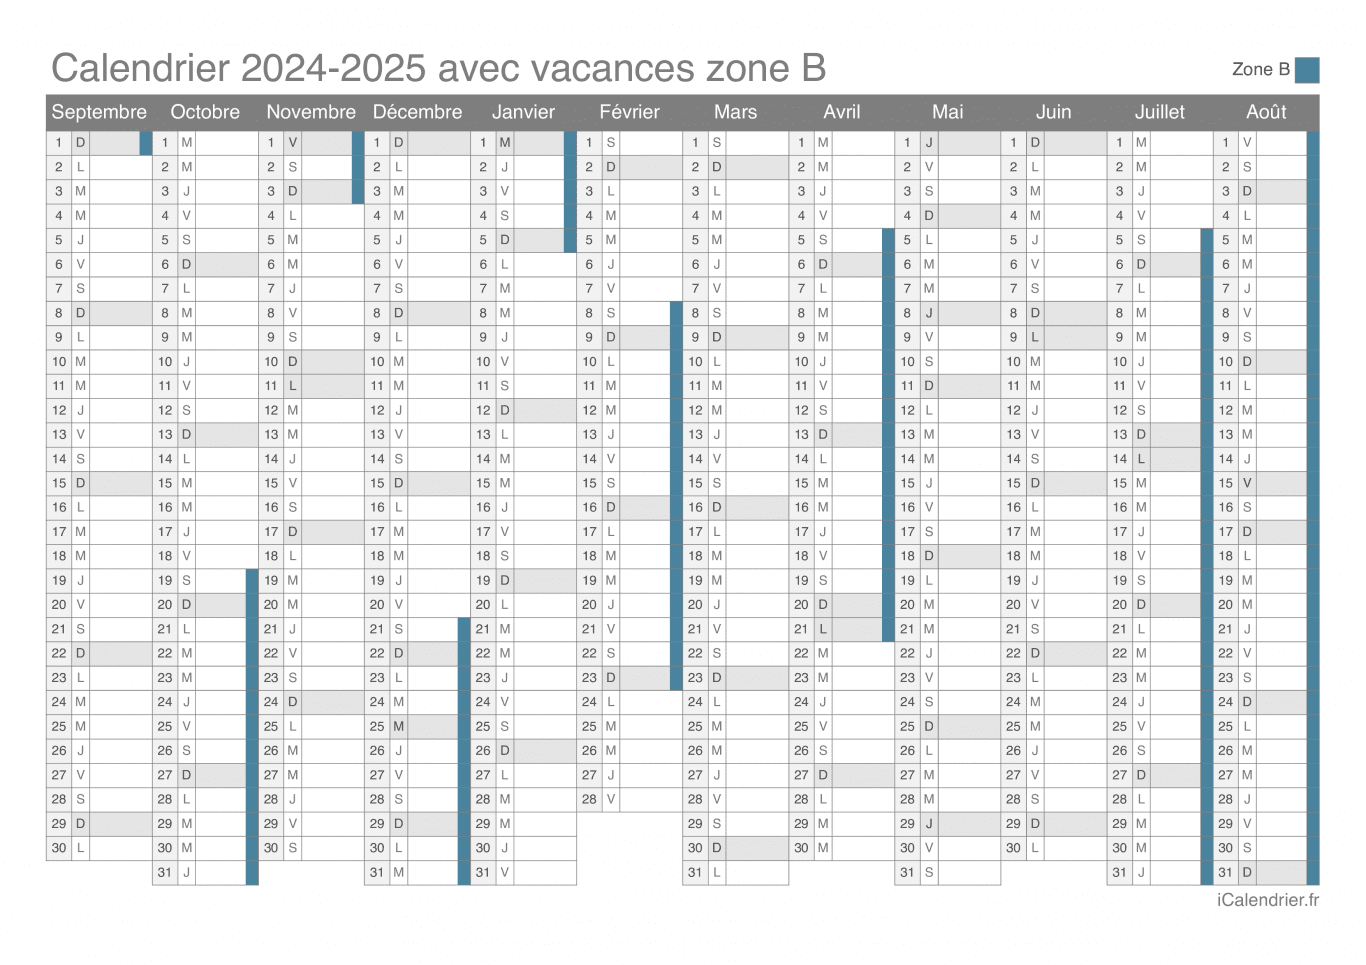 Calendrier des vacances scolaires 2024-2025 de la zone B